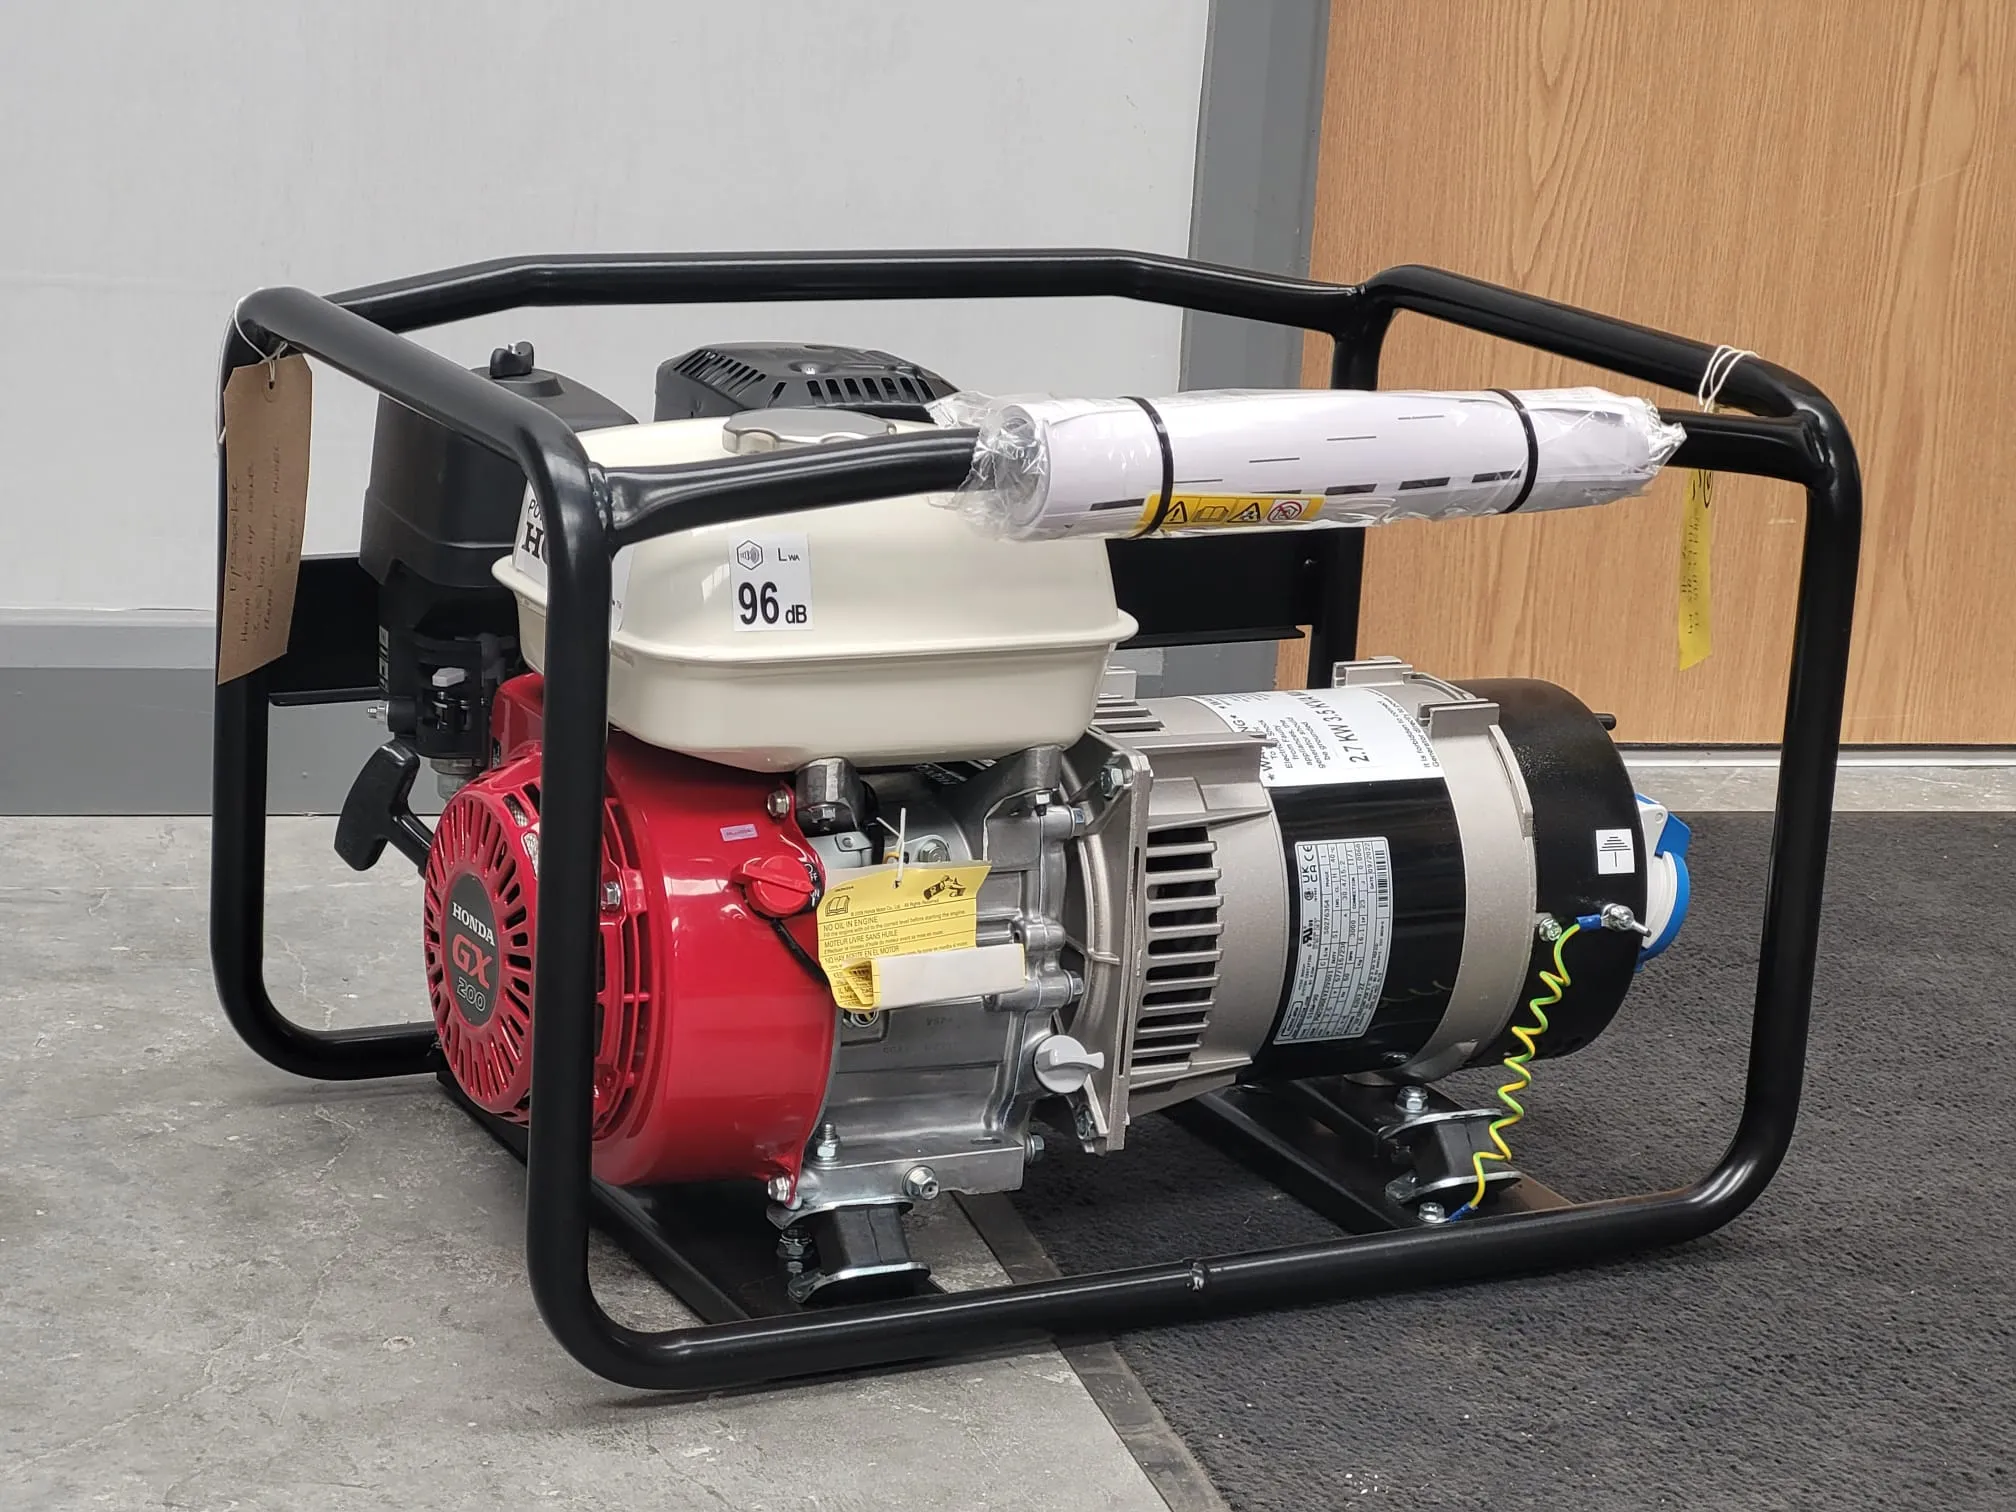 Honda Petrol Generator 6.5hp 3.5Kva - REAR SOCKETS